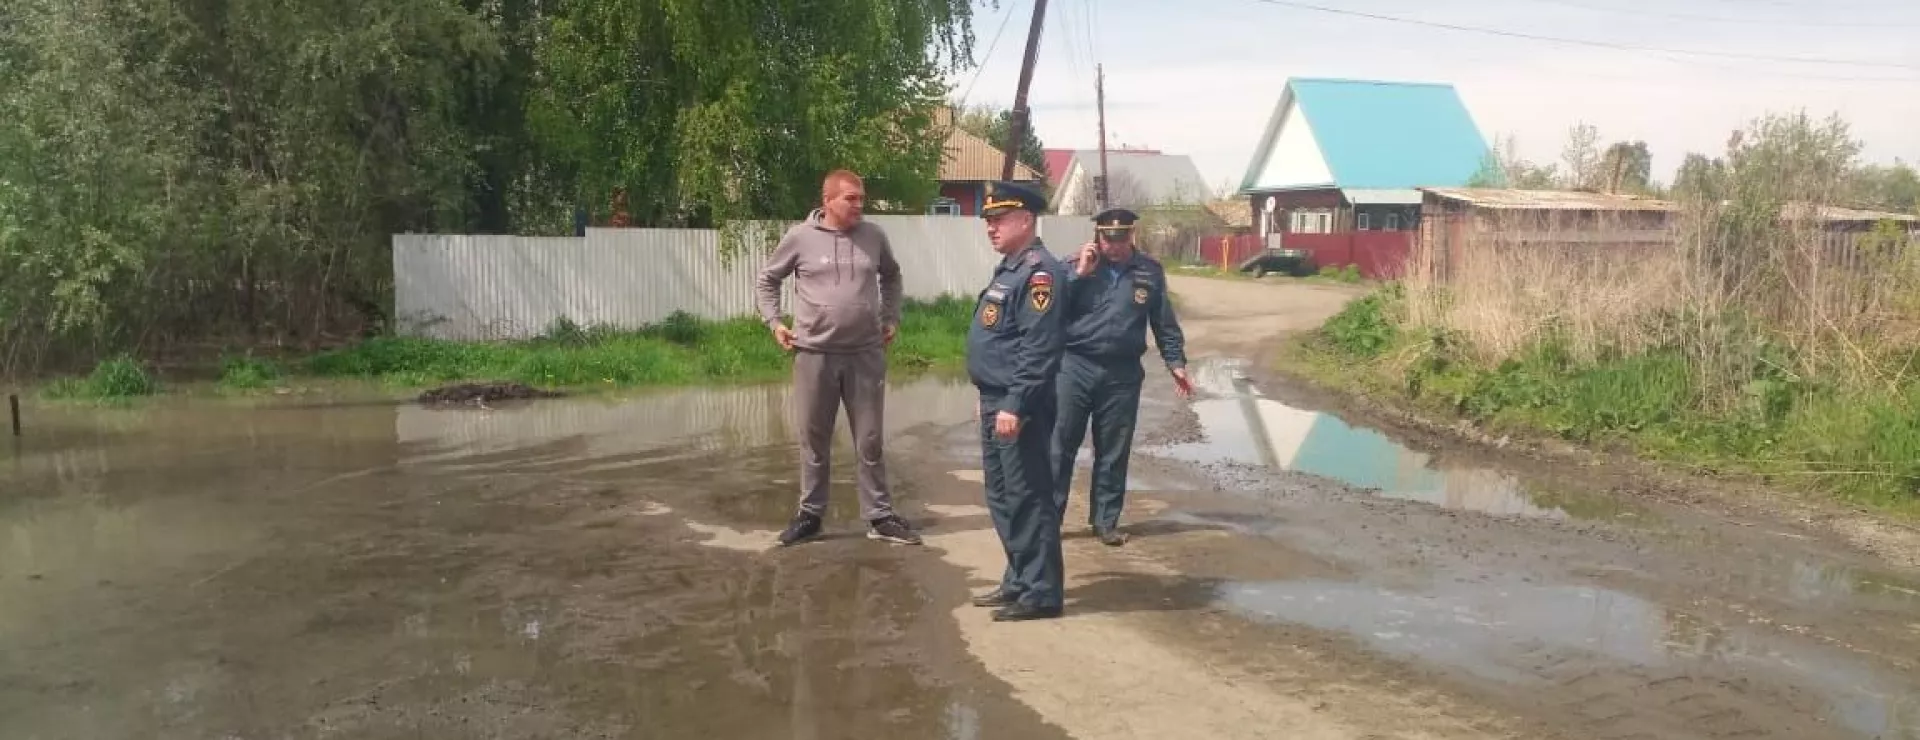 В Бийском районе поднимается вода: оперативные группы МЧС прибыли на место